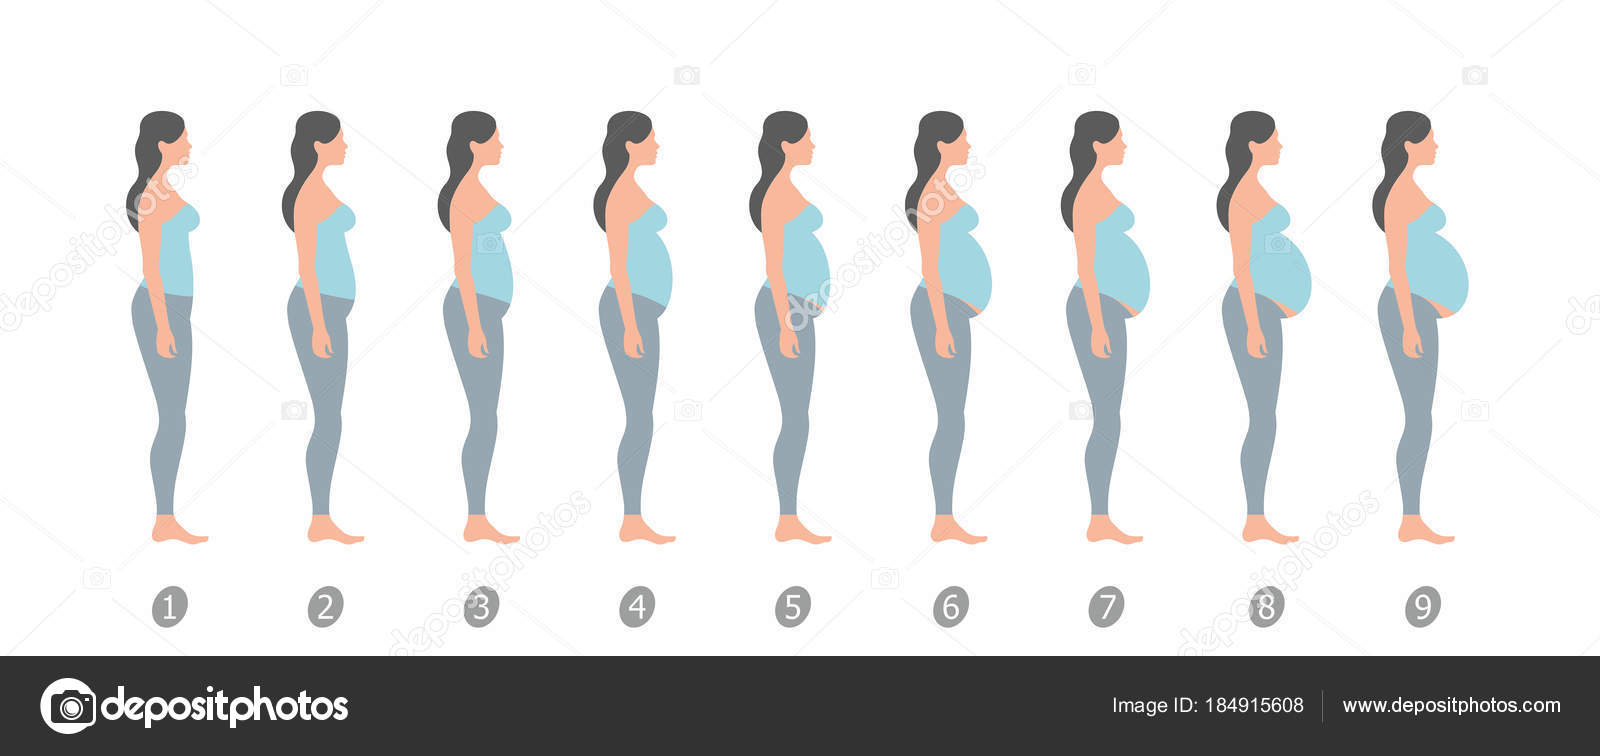 увеличилась грудь на первом месяце беременности фото 112